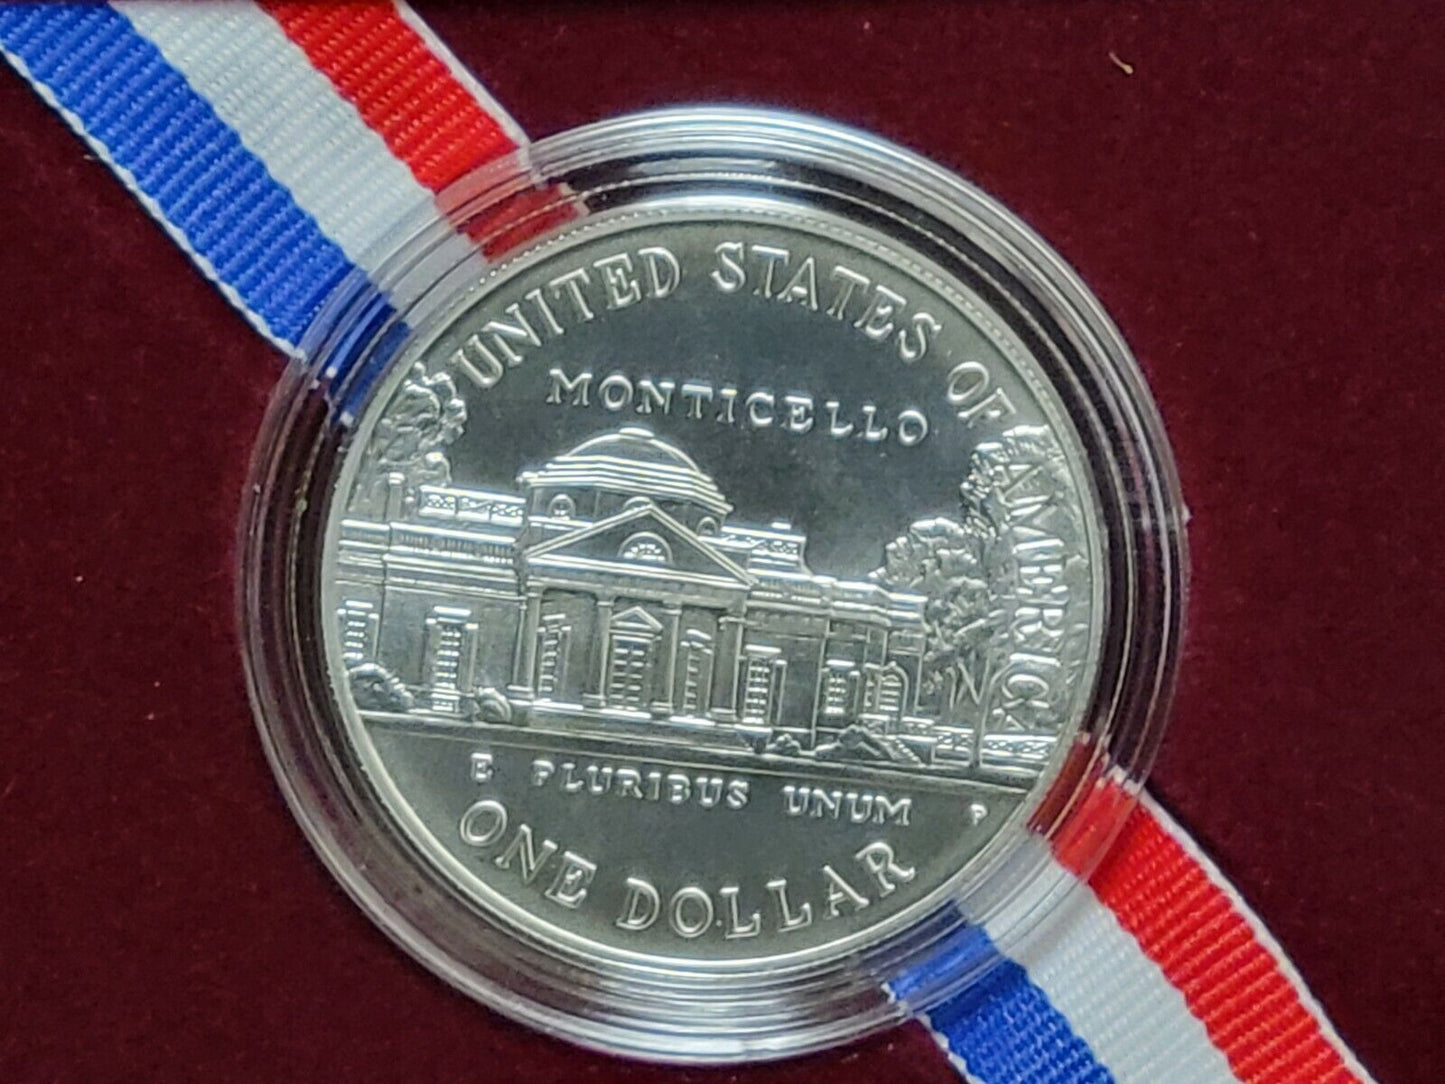 1993 P Thomas Jefferson 250th UNCIRC Silver Dollar Commemorative $1 Coin Box COA